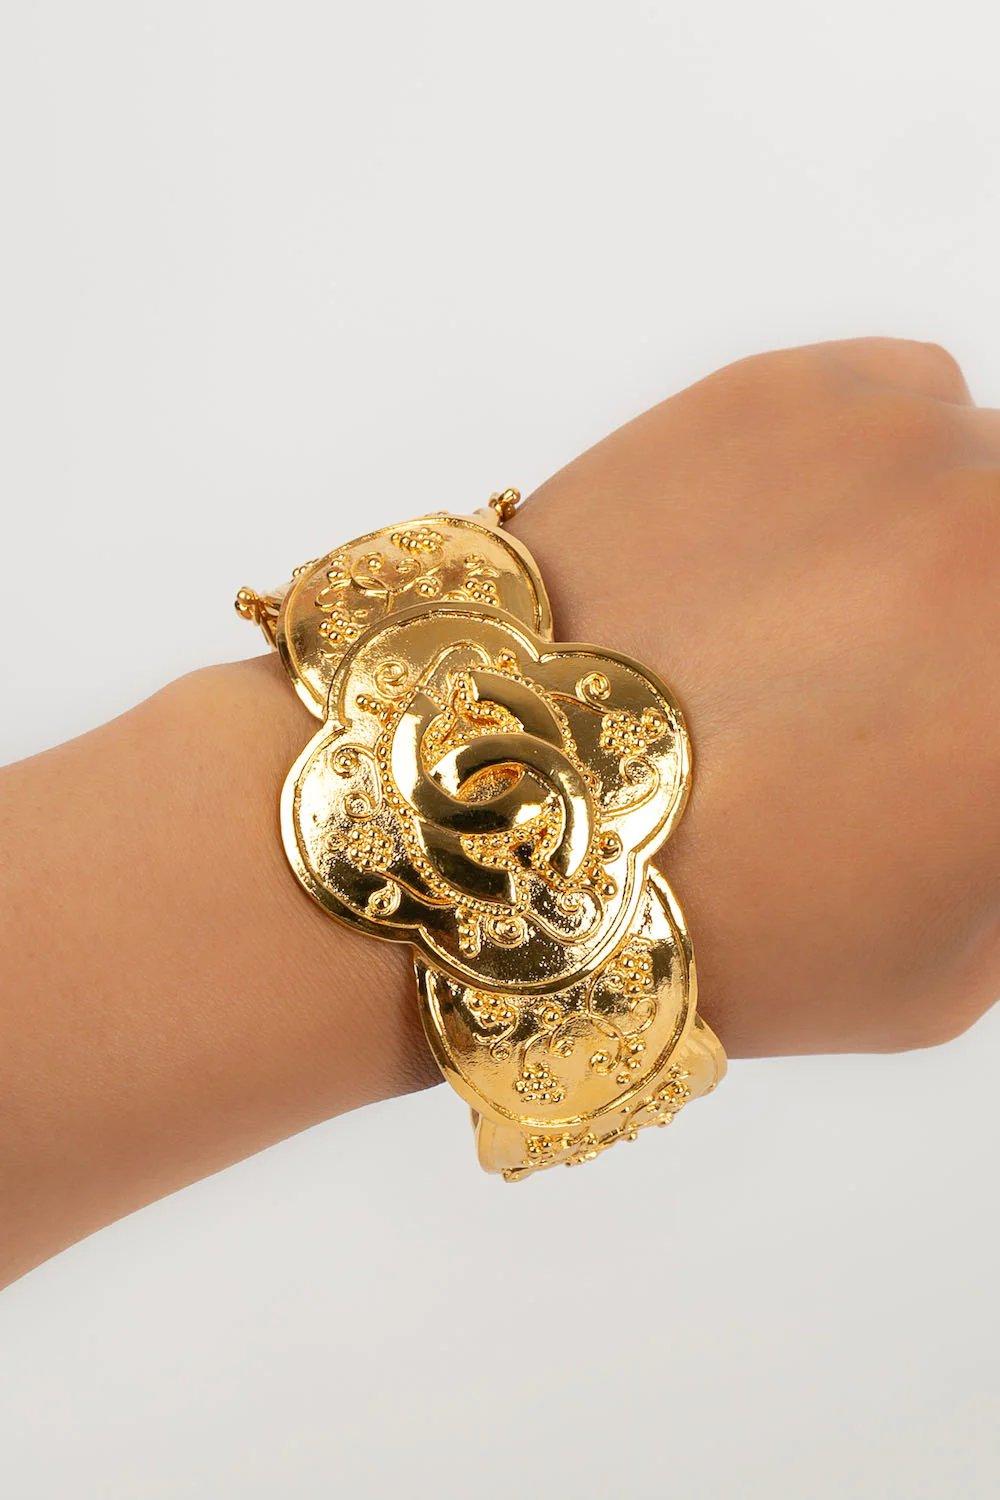 Chanel Bracelet in Engraved Gold Metal, 1995 For Sale 5